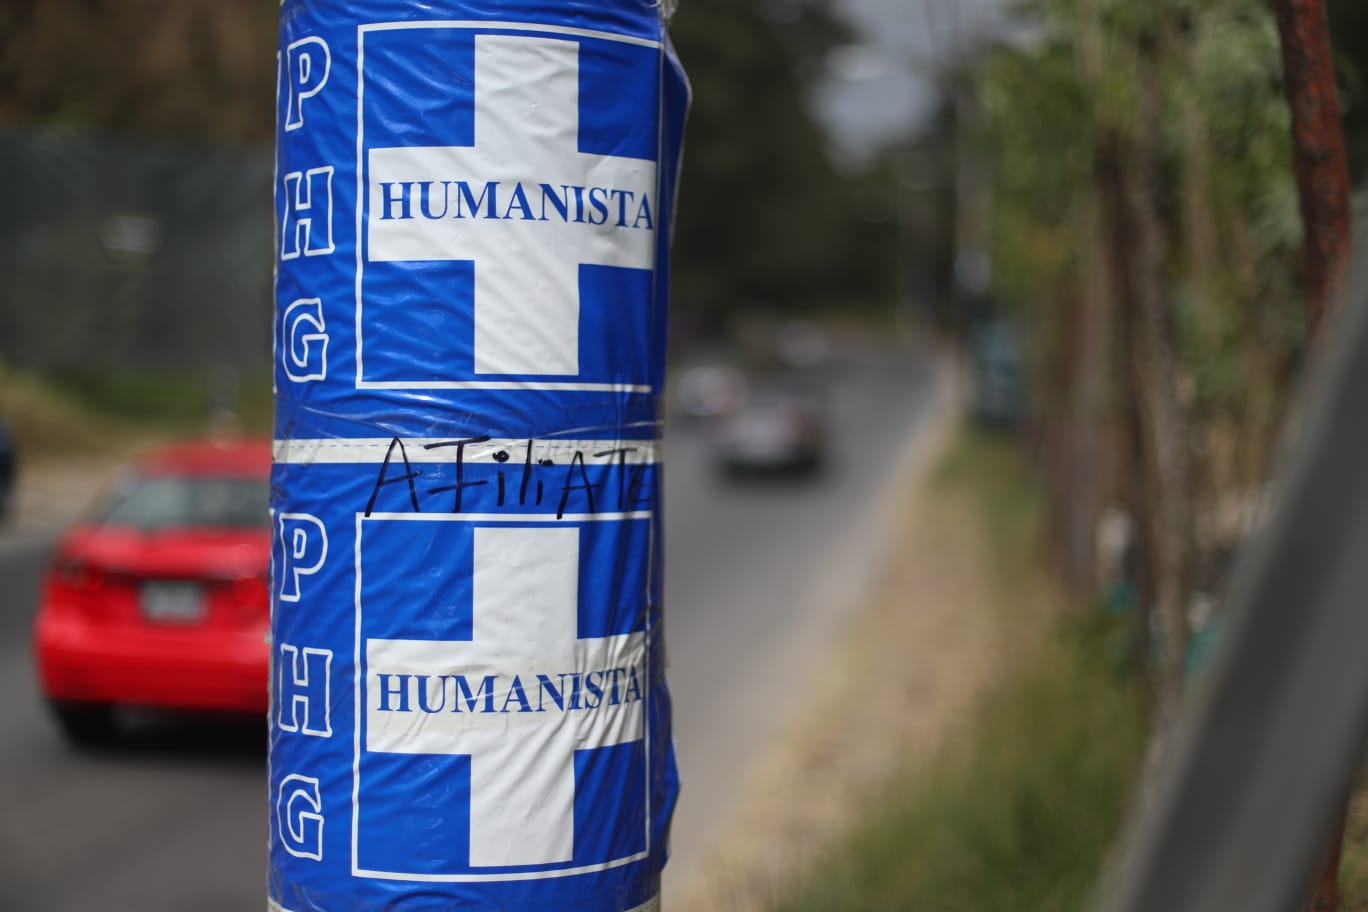 El partido Humanista fue multado por la colocación de propaganda en postes. (Foto Prensa Libre: J. D. González)